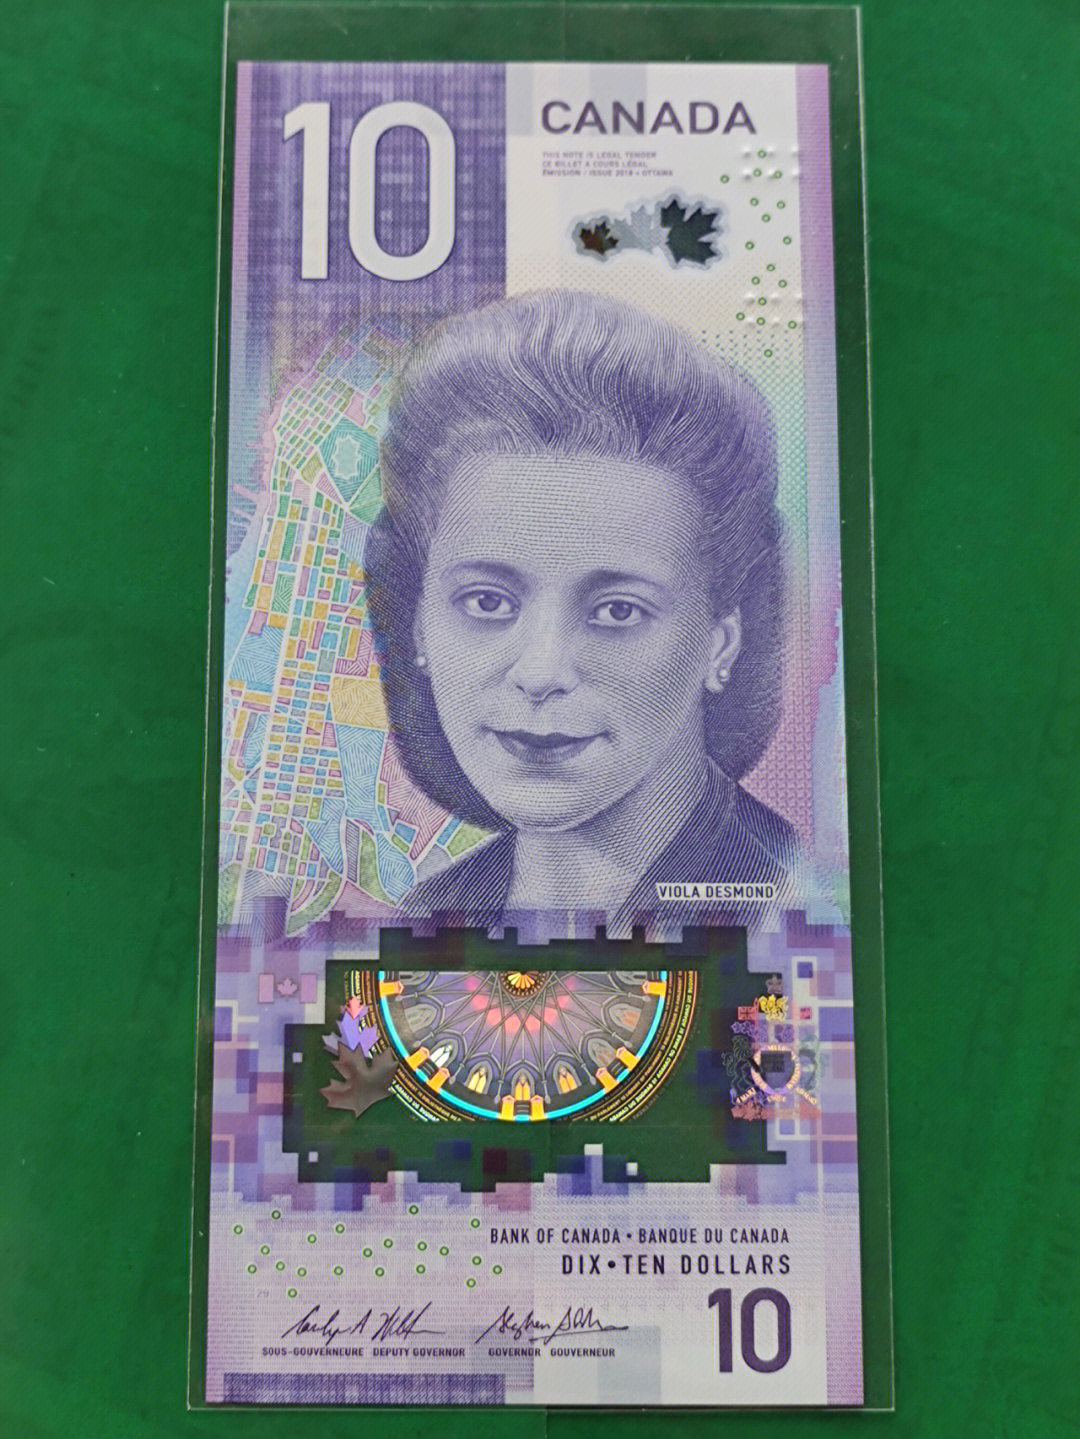 加拿大元,是加拿大的货币,货币符号c$,货币代码cad,现行的加拿大纸币